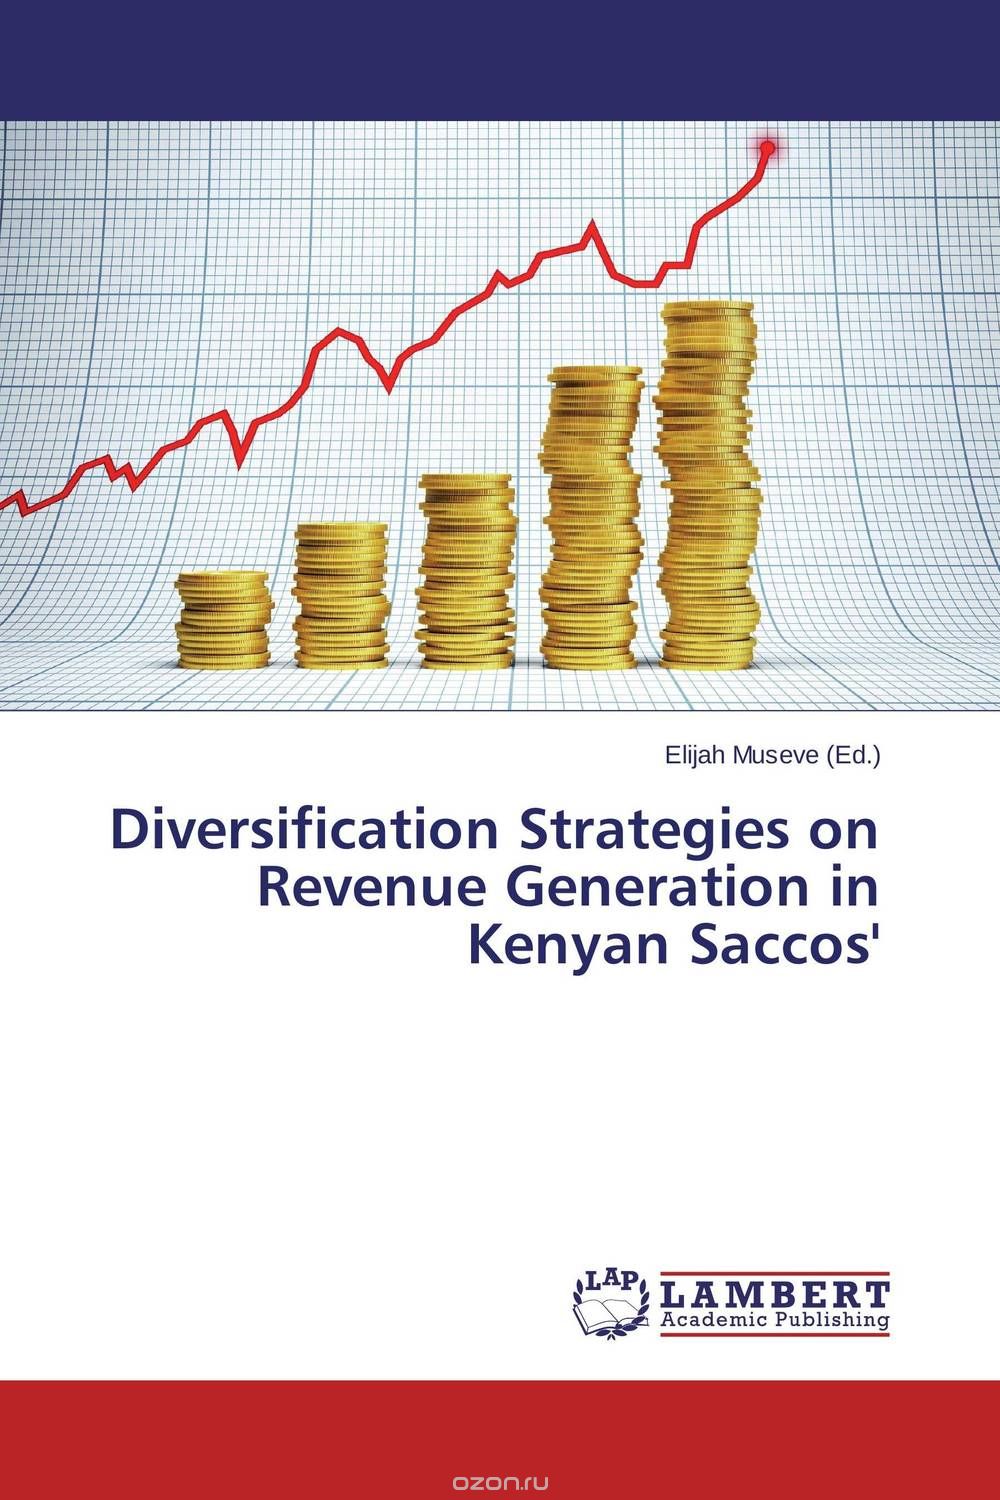 Скачать книгу "Diversification Strategies on Revenue Generation in Kenyan Saccos'"